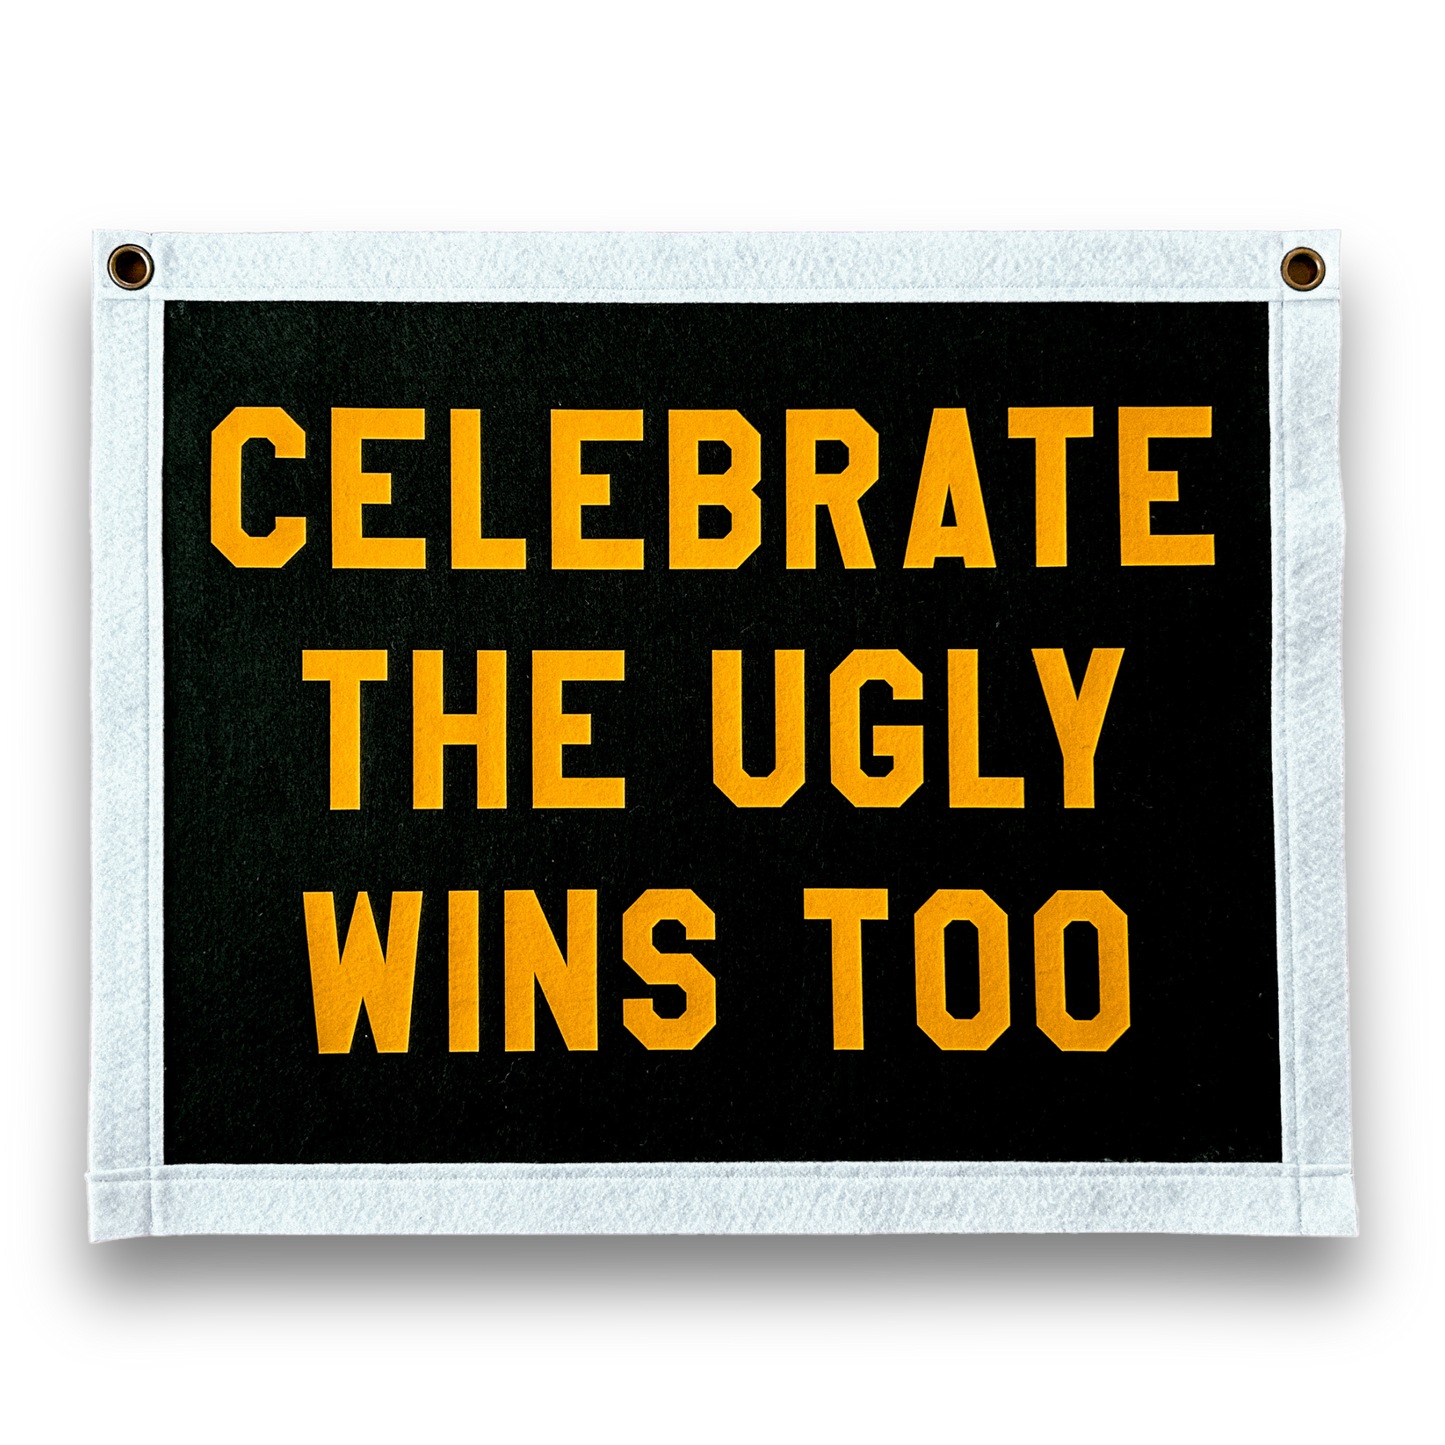 Célébrez le drapeau de bannière en feutre Ugly Wins